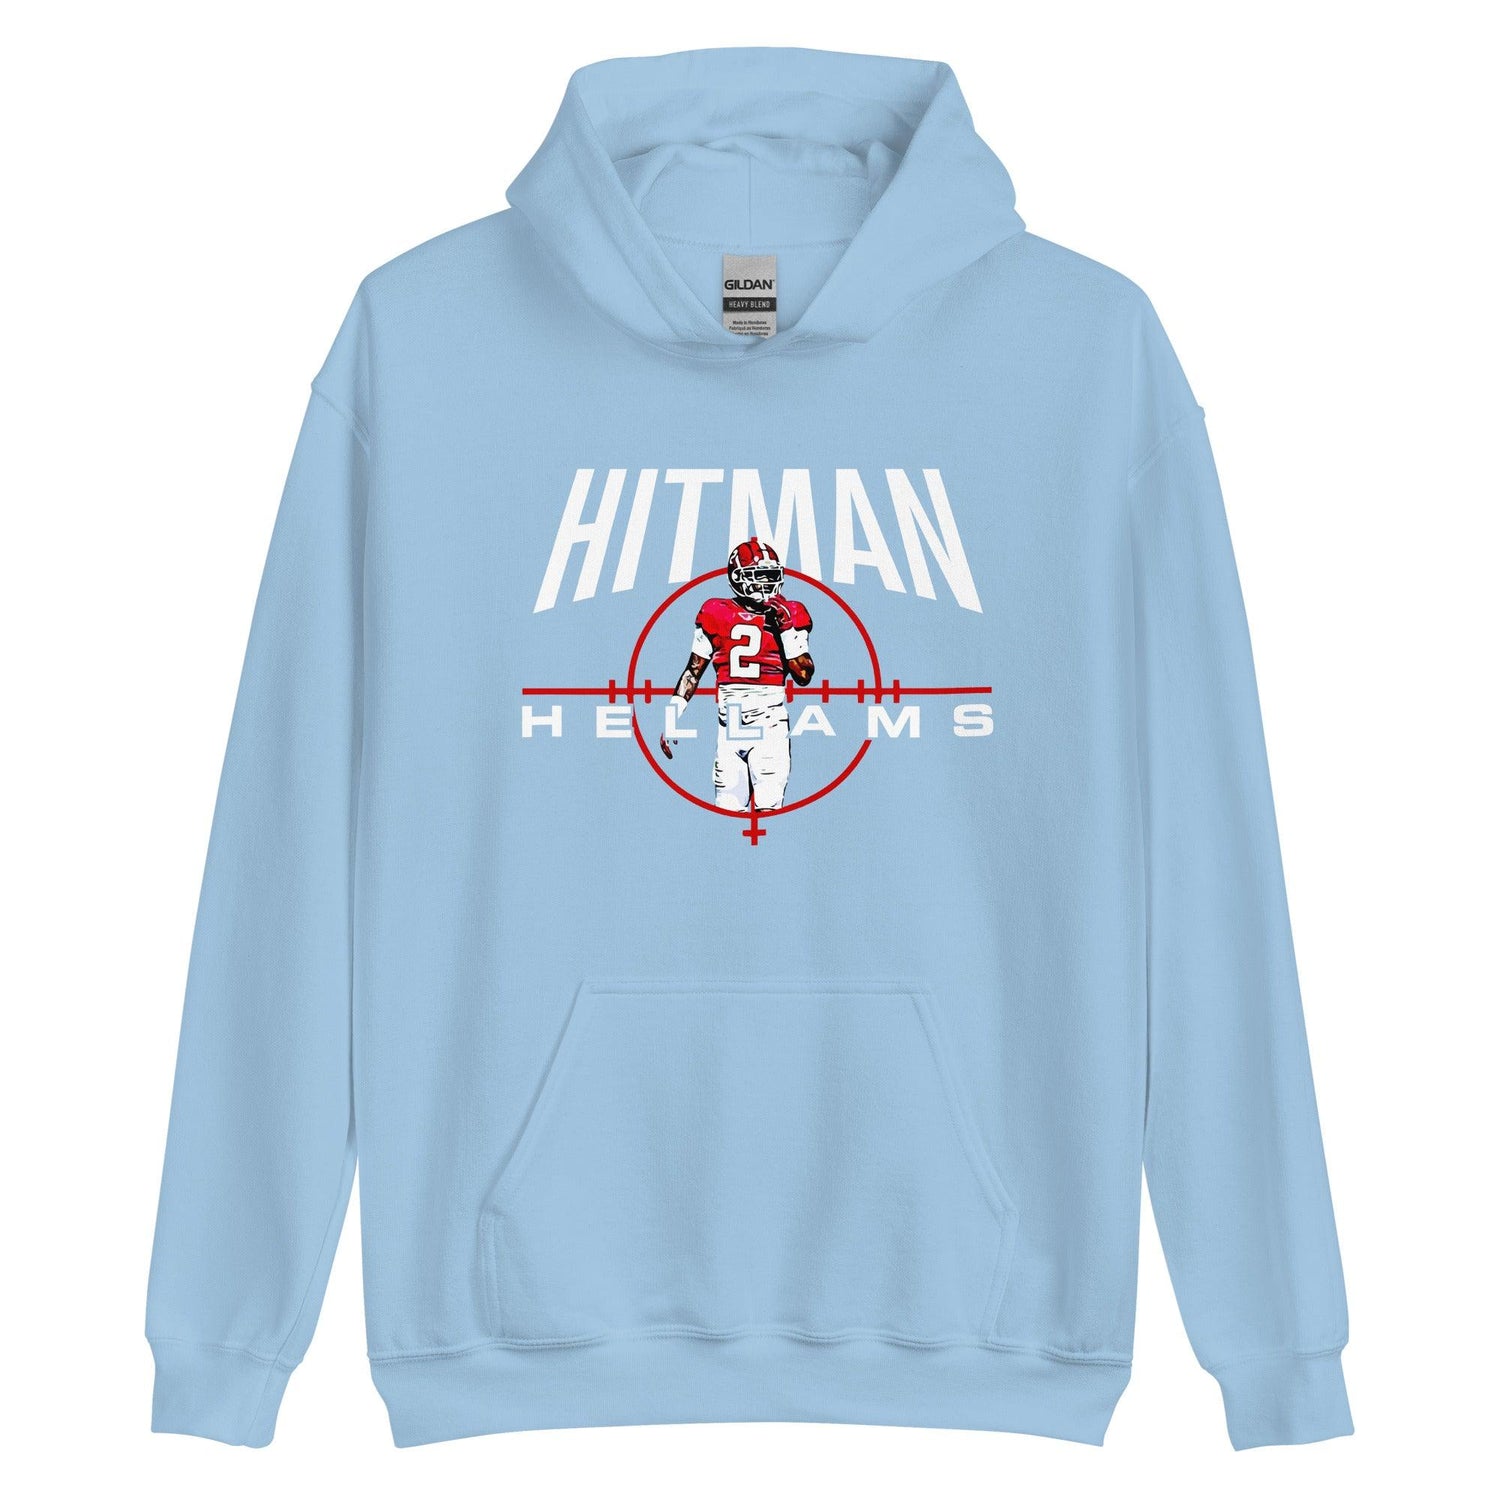 DeMarcco Hellams "Hitman" Hoodie - Fan Arch